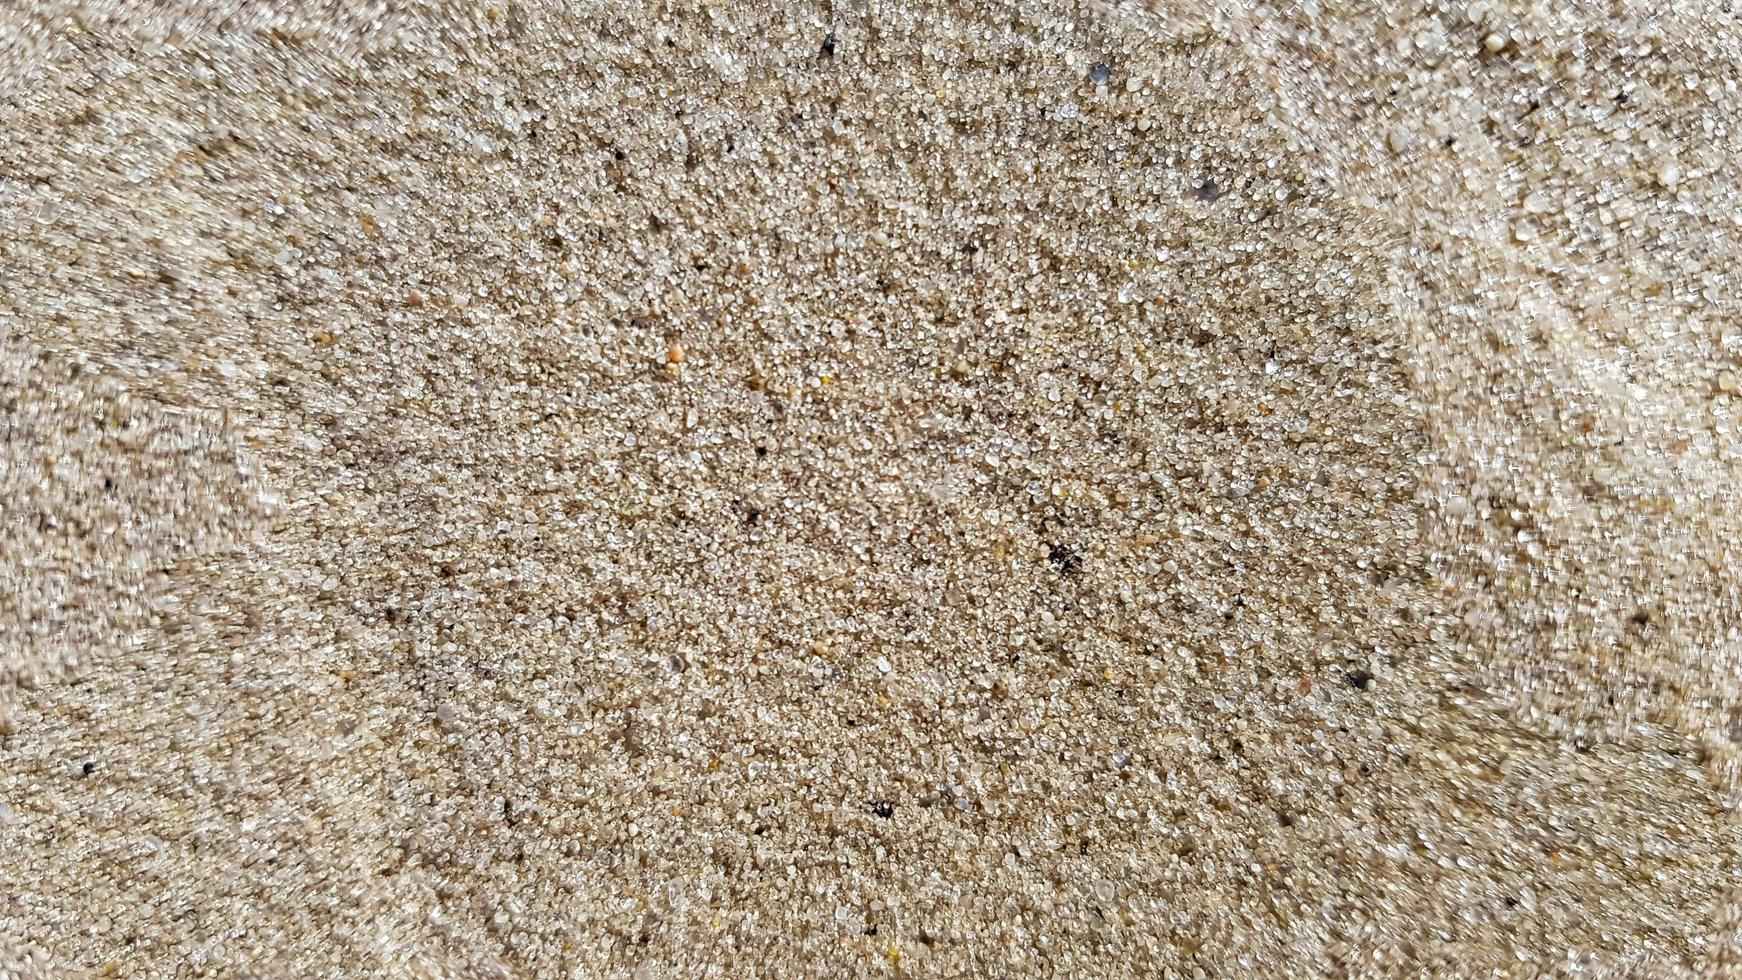 vista dall'alto della spiaggia di sabbia. sfondo con copia spazio e trama di sabbia visibile. fondo di sabbia fine. sfondo sabbia foto